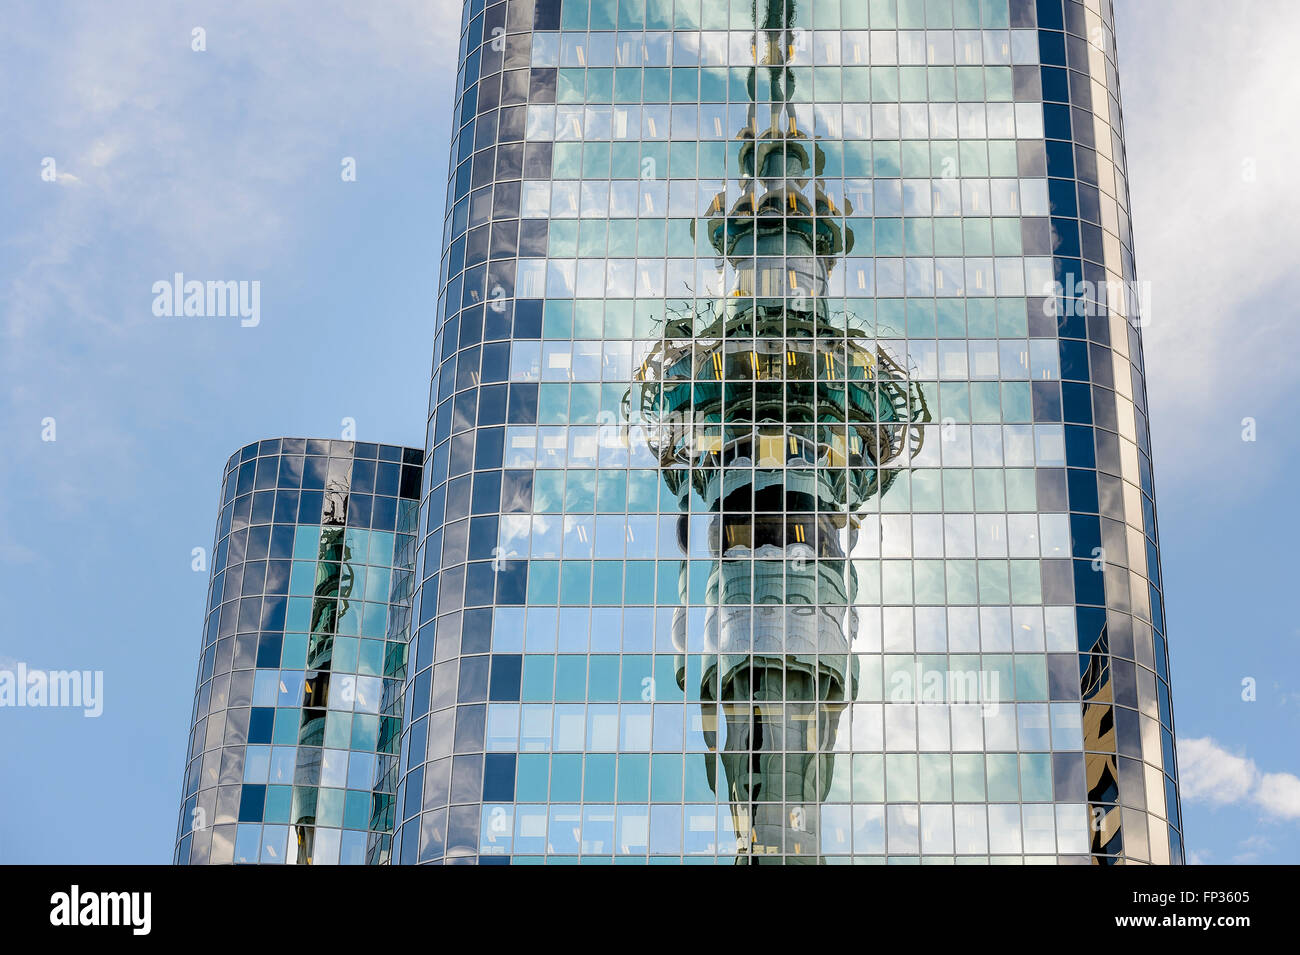 Reflet de la Sky Tower d'une façade en verre, Auckland, île du Nord, Nouvelle-Zélande Banque D'Images